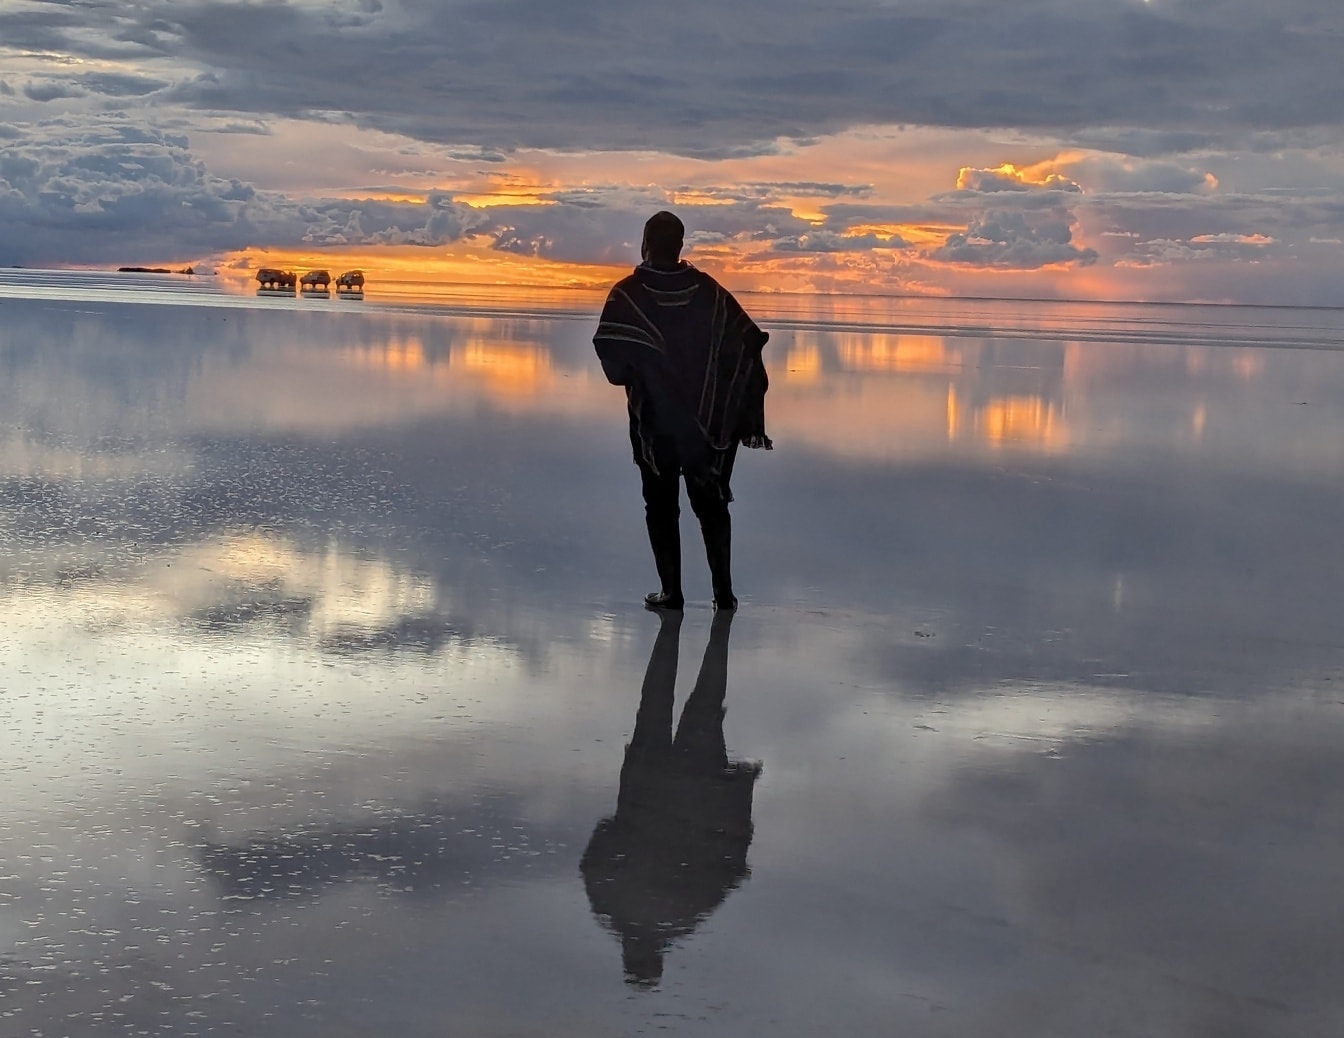 Άνδρας στέκεται σε ένα νερό με όμορφο ηλιοβασίλεμα στο βάθος που αντανακλά σε μια επιφάνεια νερού